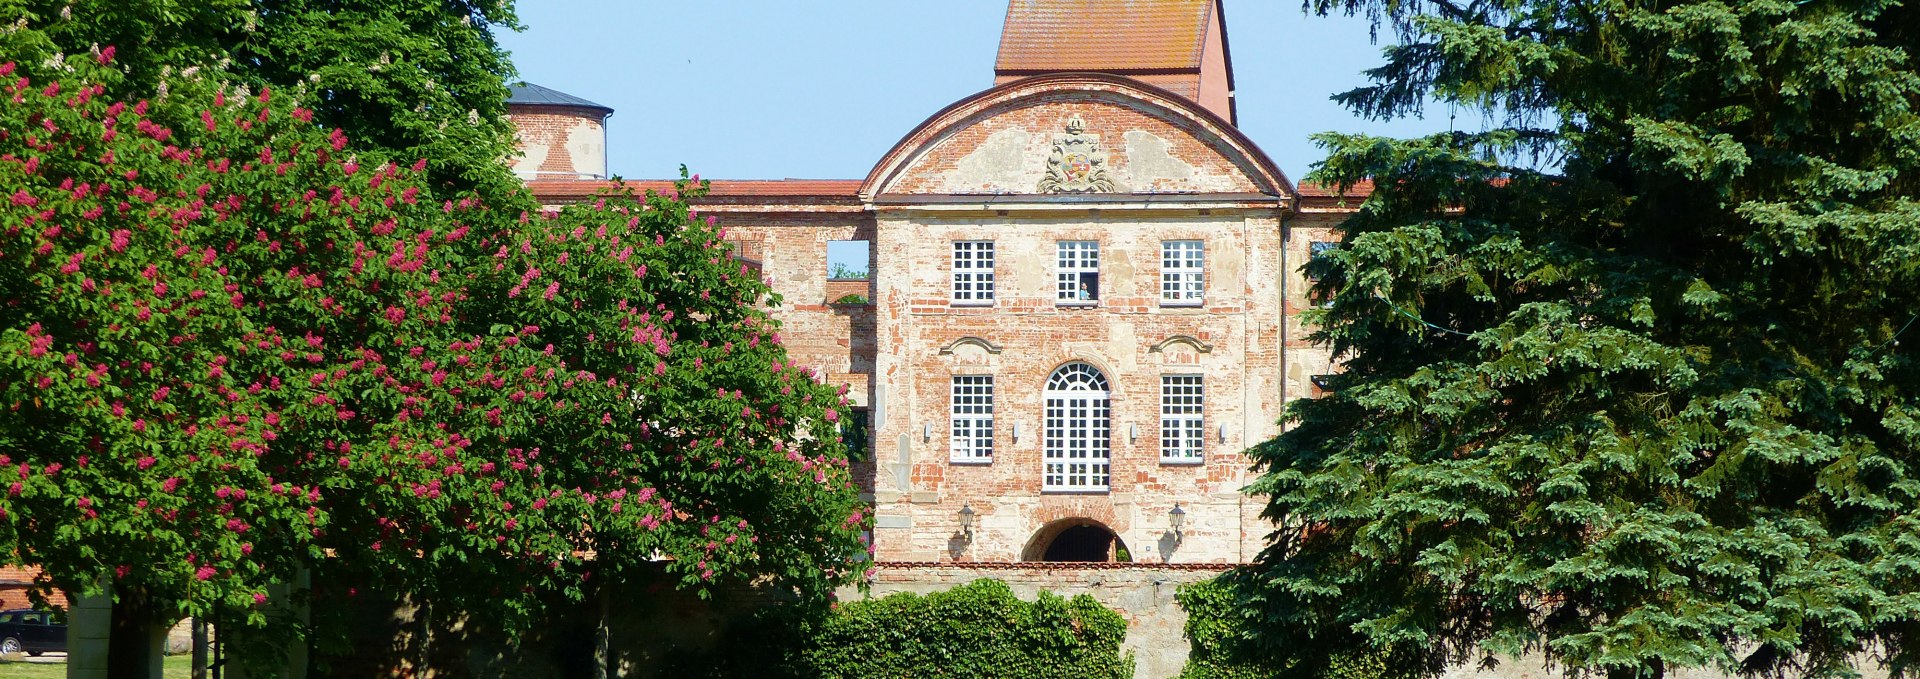 Kloster- und Schlossanlage Dargun, © burgentourist.de